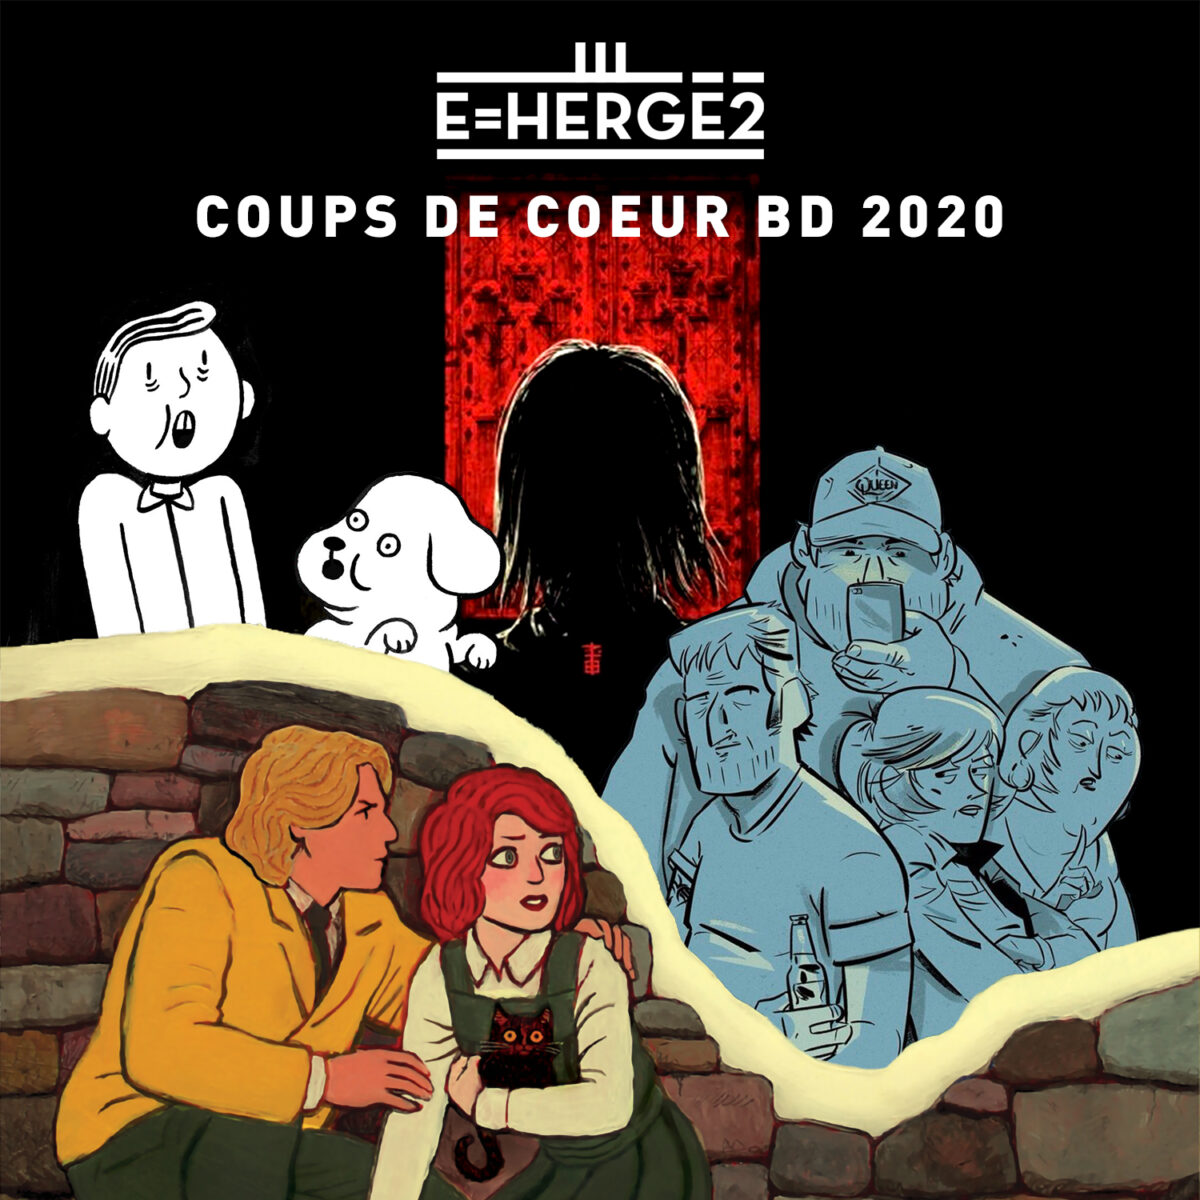 E=Hergé2 Coups de coeur BD 2020